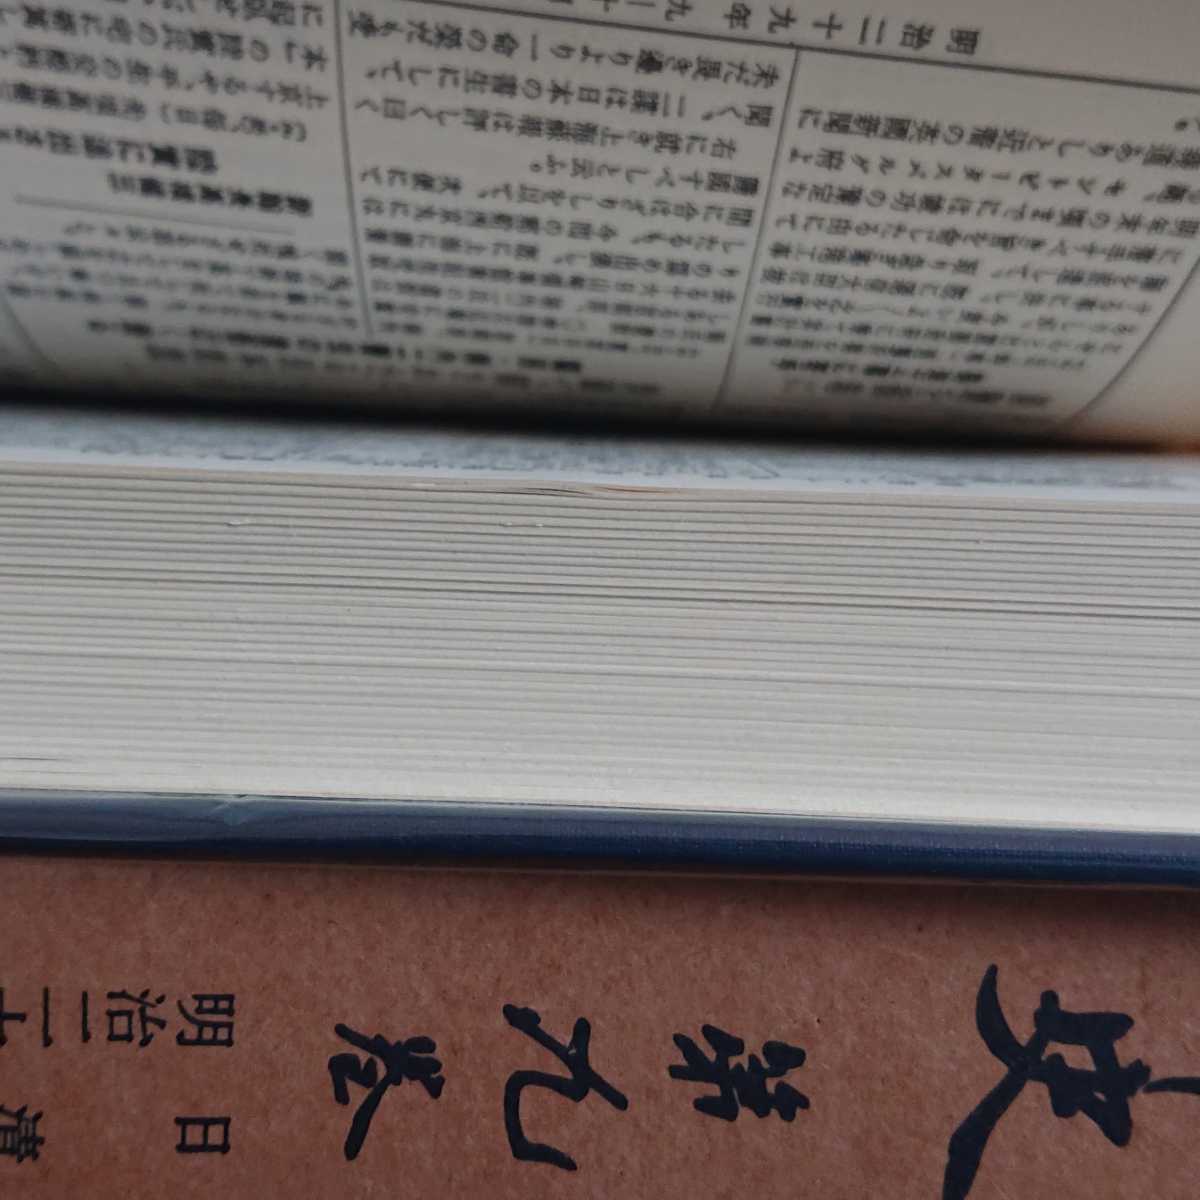 [ переиздание ][ газета сборник . Meiji сборник год история все 15 шт ] состояние . экономические науки .